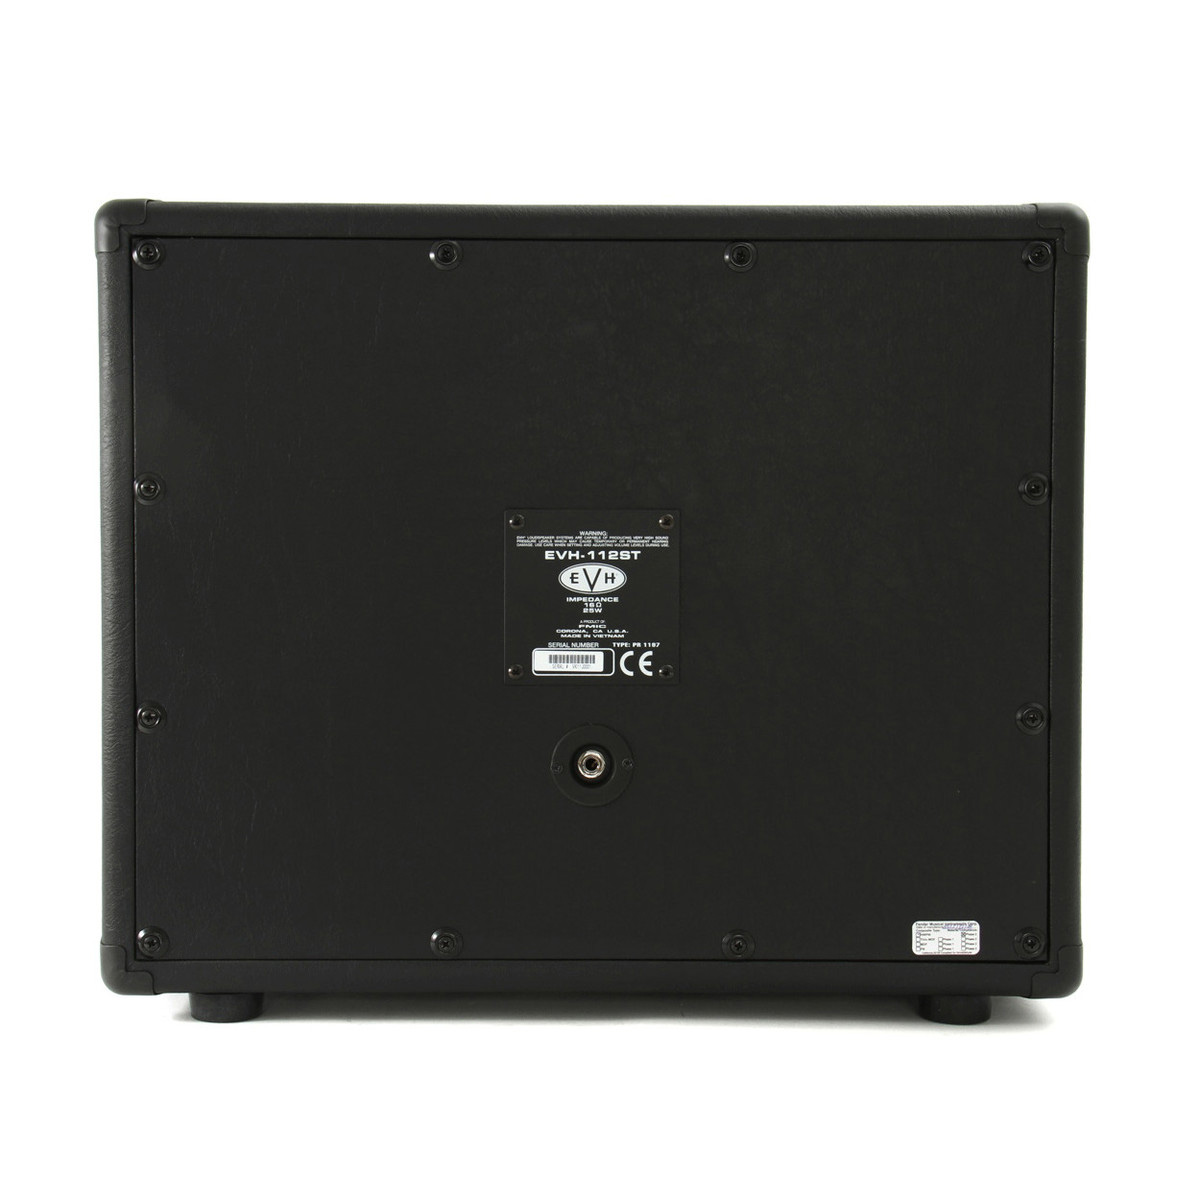 EVH 5150III® 112 ST Cabinet, Black Кабинеты для электрогитарных усилителей